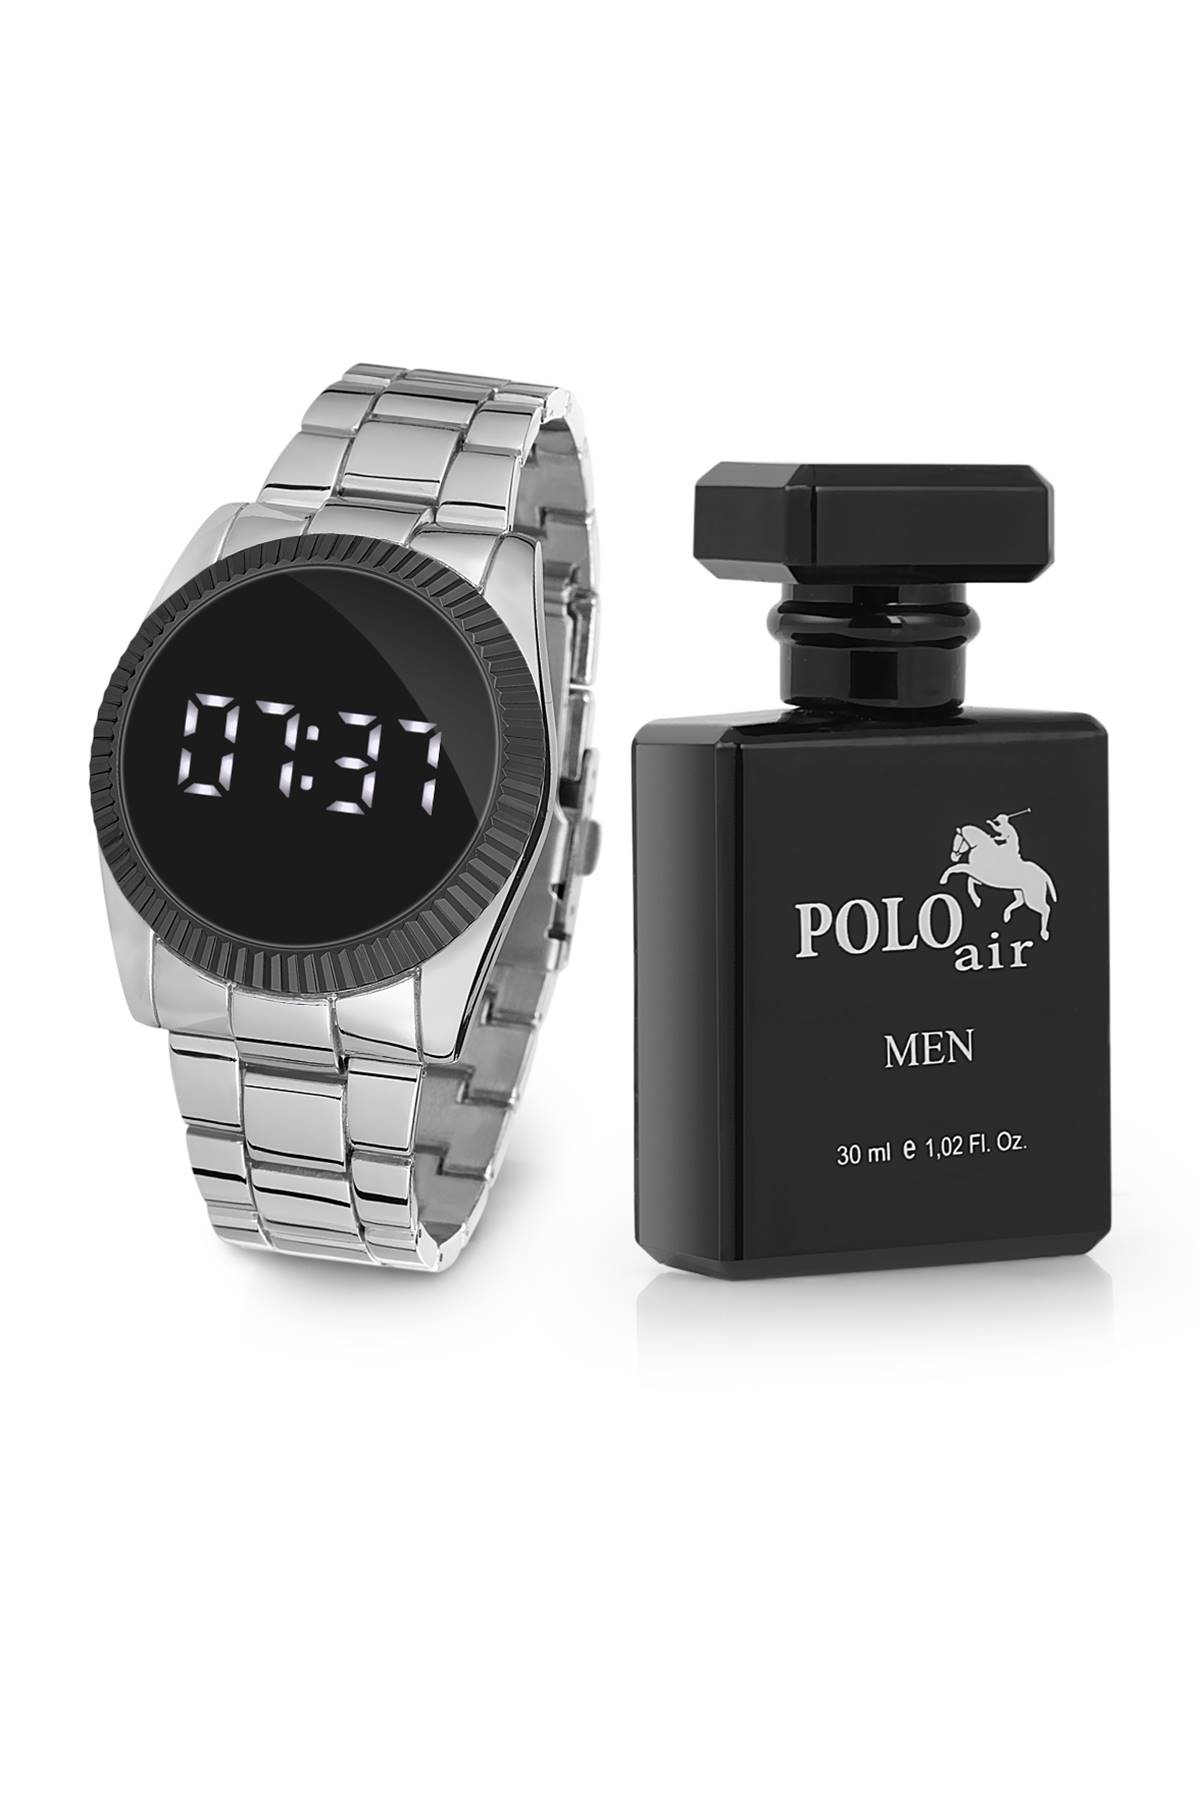 Polo Air Dijital Erkek Kol Saati Parfüm Hediyeli Kutulu Hediyelik pl-0466E2xx